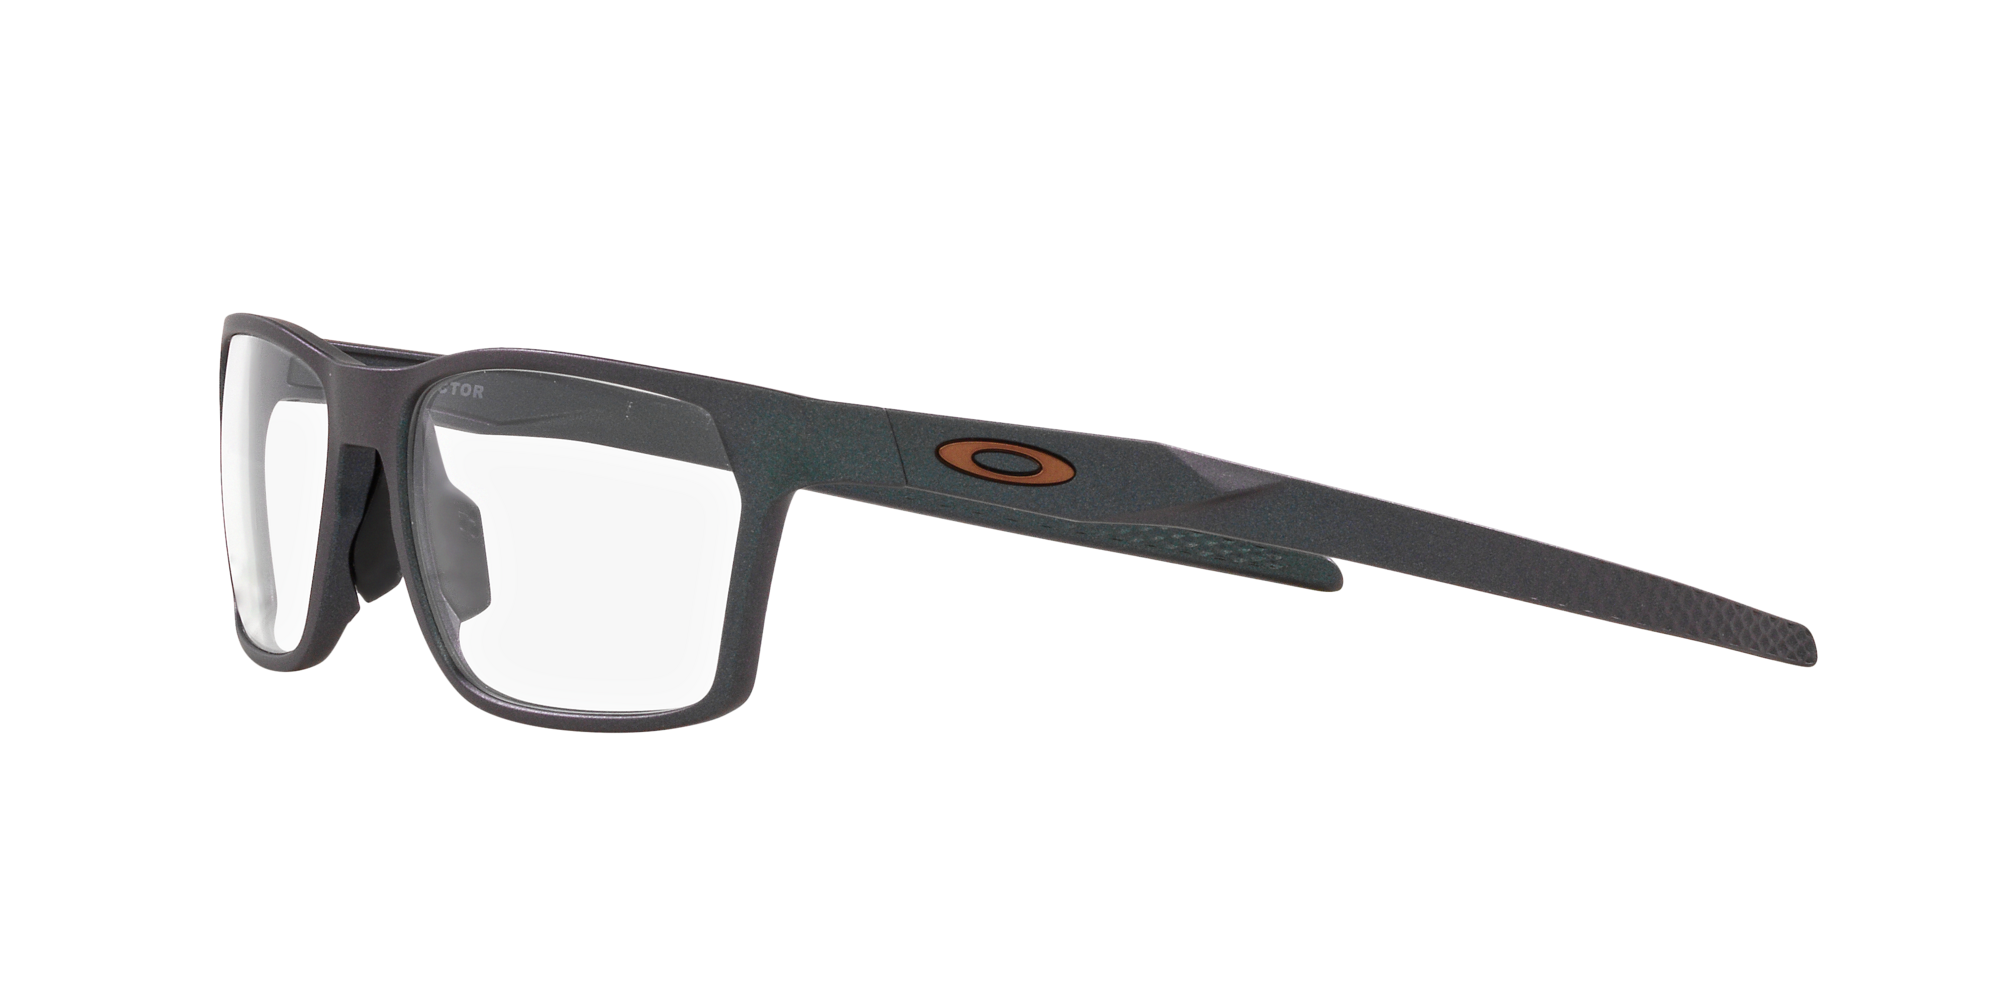 Das Bild zeigt die Korrektionsbrille OX8032 803207 von der Marke Oakley  in  dark matte silver/blue colorshift.